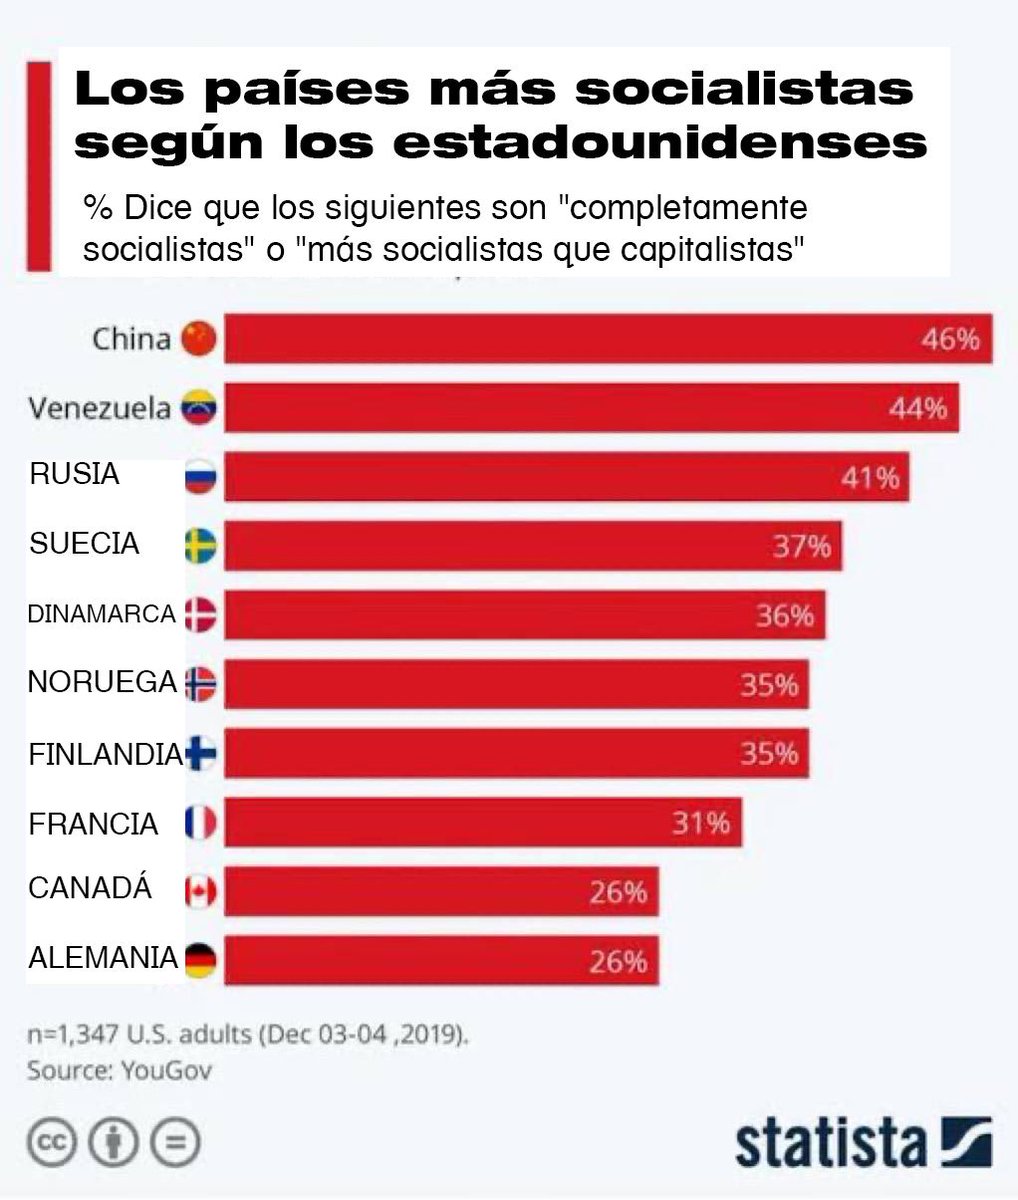 Para que mi invitan si saben cómo soy...jejejeje
#VivaChávez
#VivaNicolas
China🇨🇳y🇻🇪Venezuela considerados como los países 'más socialistas' del mundo según encuesta estadounidense.